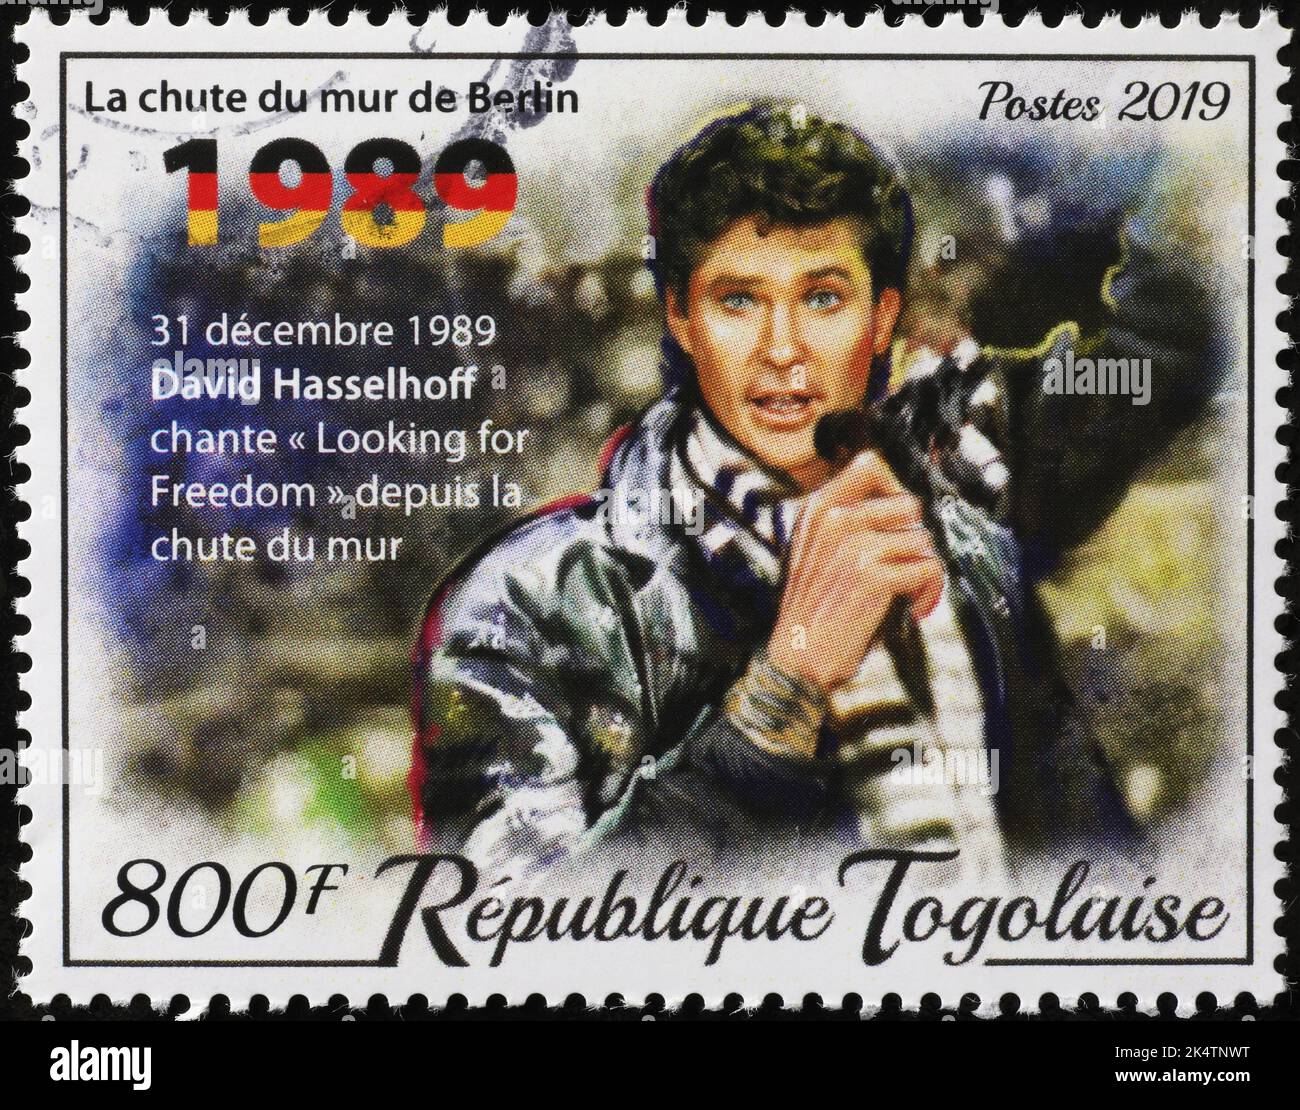 David Hasselhoff canta en sello postal después de la caída del muro de Berlín Foto de stock